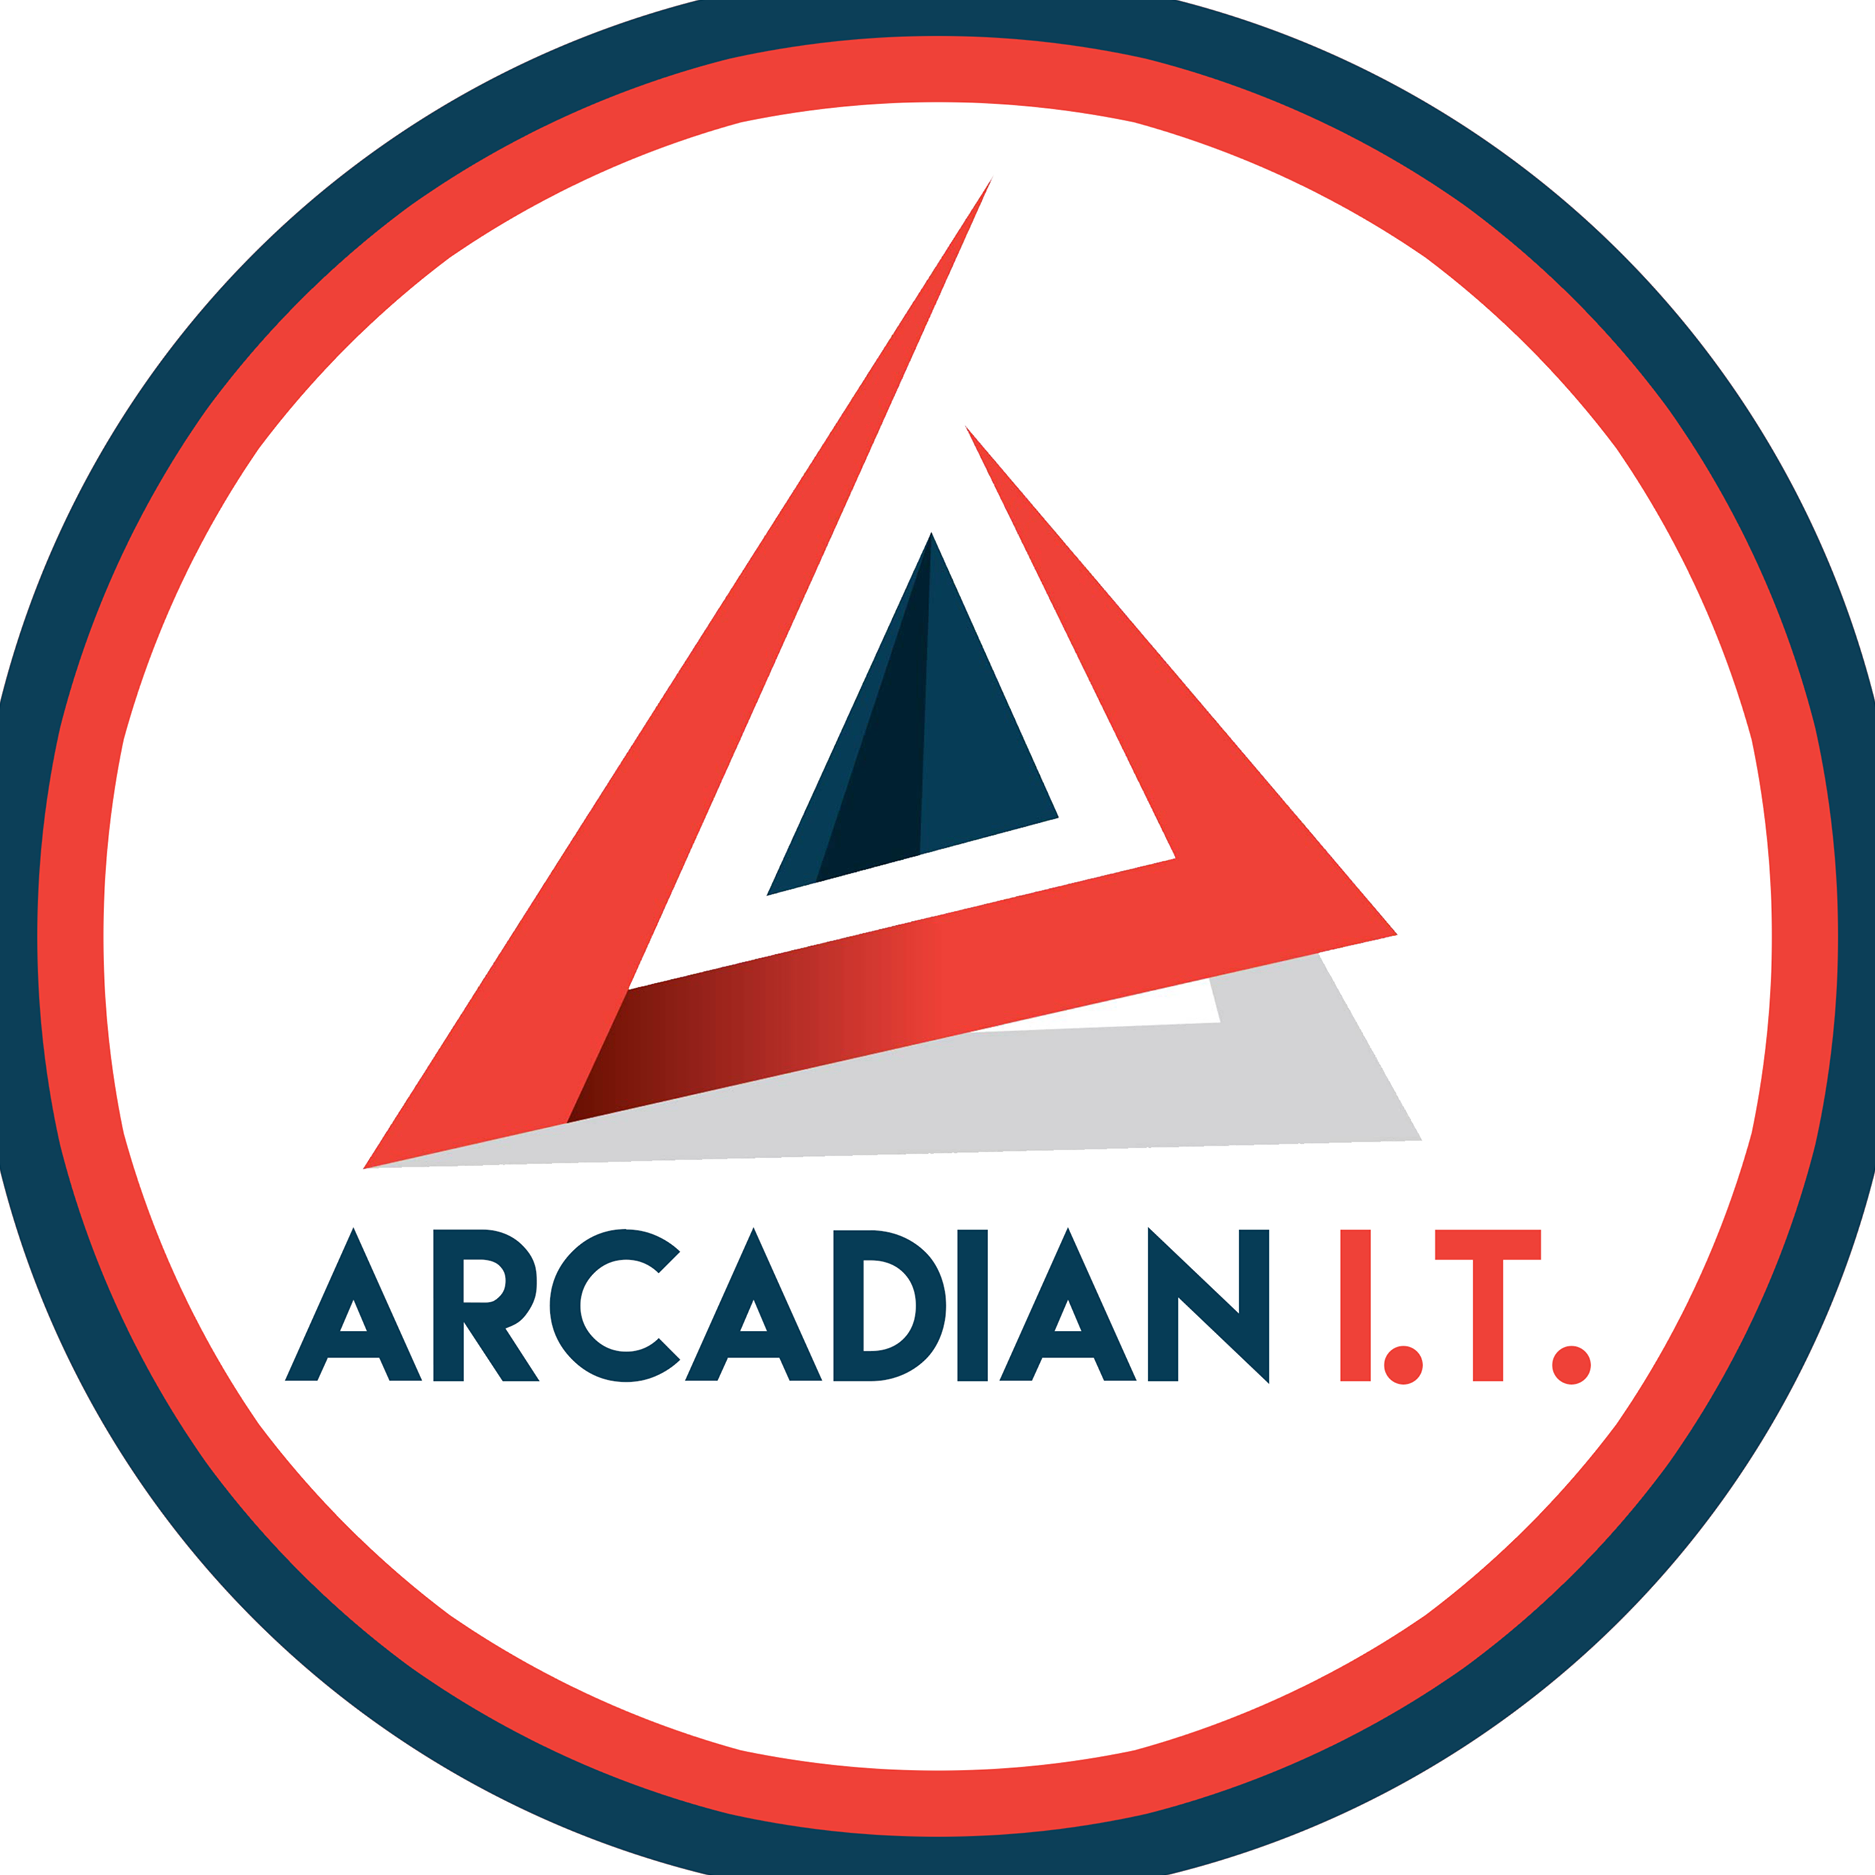 Arcadian I.T.